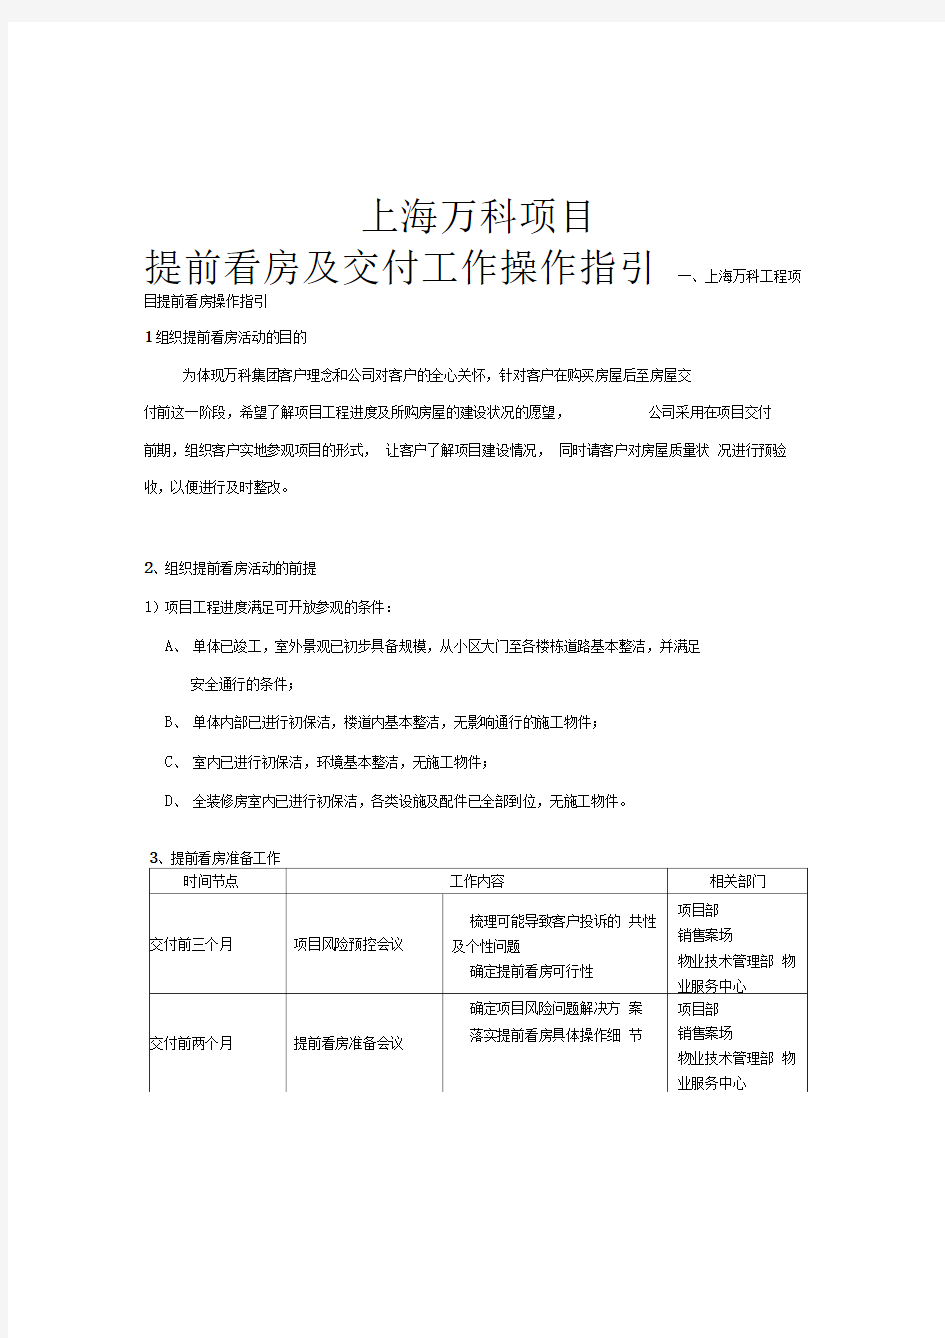 上海万科项目提前看房及交付工作操作指引